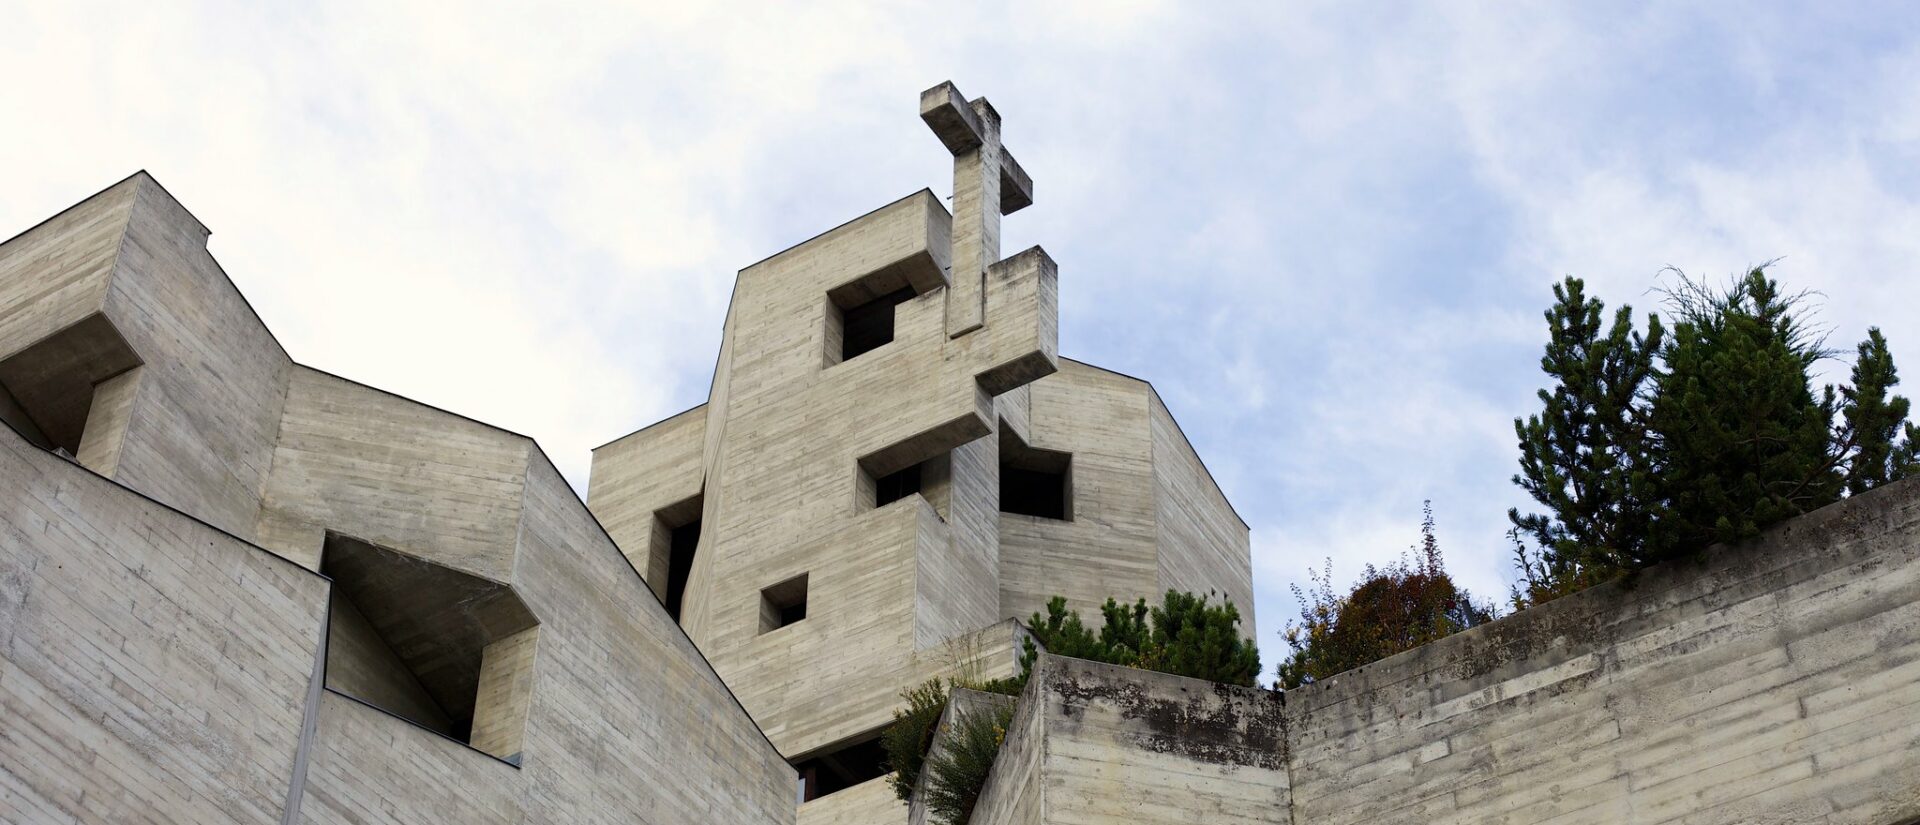 L'église d'Hérémence (VS) est l'oeuvre de l'architecte Walter Maria Förderer | © Maxime Schwarz/Flickr/CC BY-NC-ND 2.0